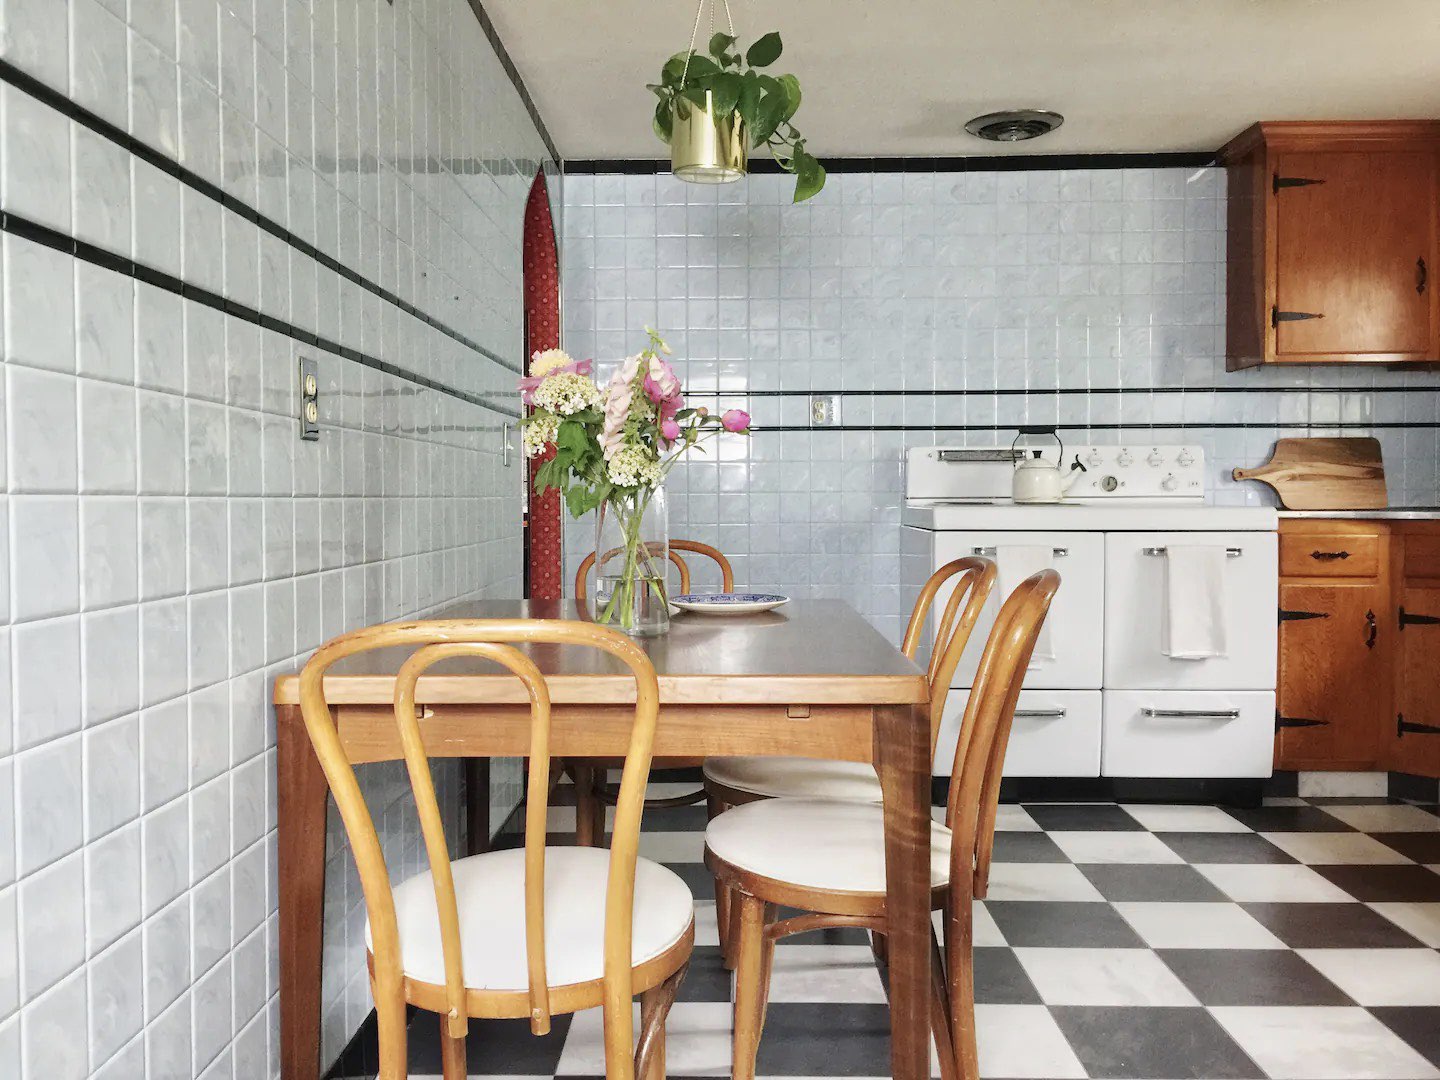 visite deco appartement mid century modern chaise vintage coin repas cuisine sol noir et blanc cuisinière carrelage mur bleu pastel et frise noire